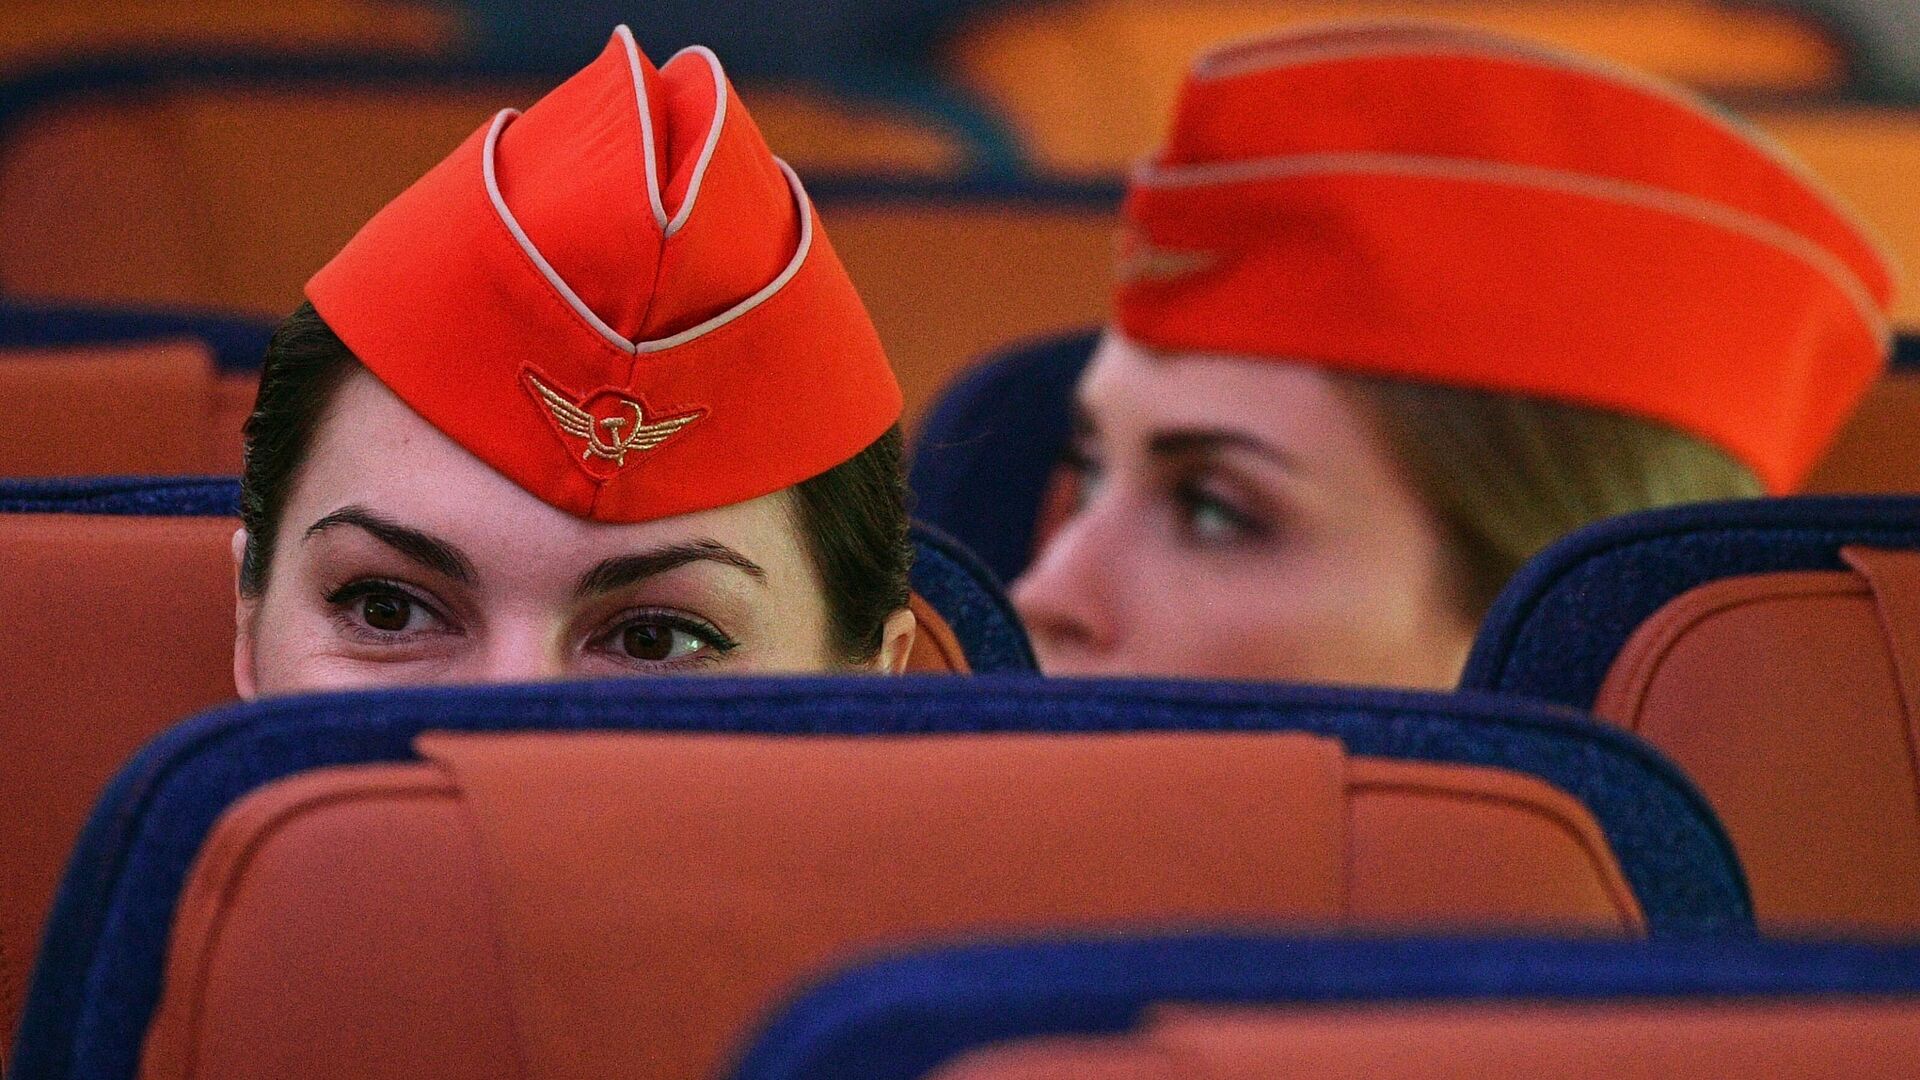 Стюардессы в салоне дальнемагистрального широкофюзеляжного пассажирского самолета Airbus A350-900  - РИА Новости, 1920, 25.10.2020